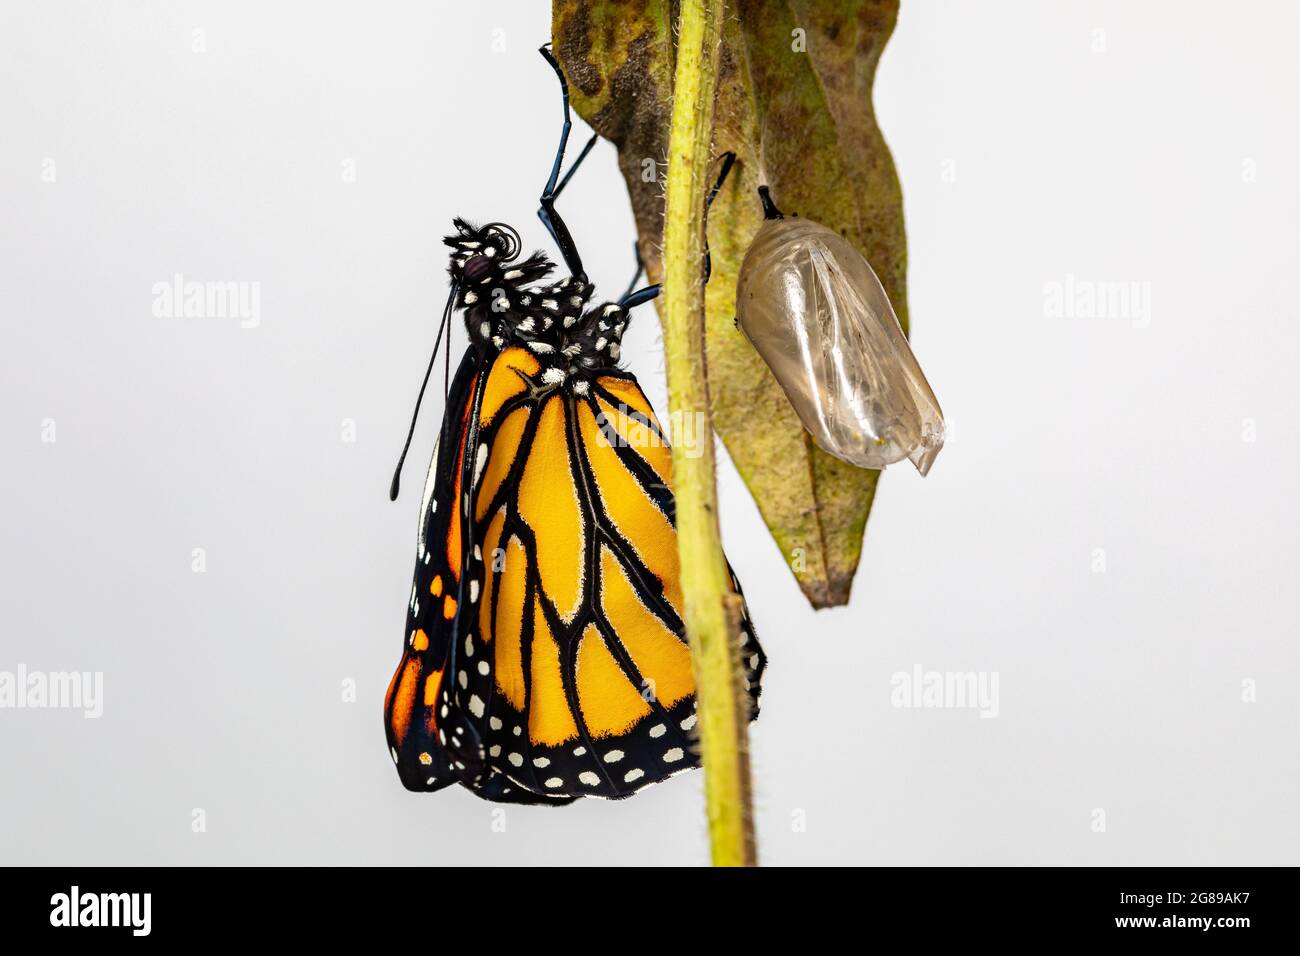 La mariposa monarca acaba de emerger del crisálido completando la metamorfosis. Concepto de conservación de mariposas, ciclo de vida, preservación del hábitat, y b Foto de stock